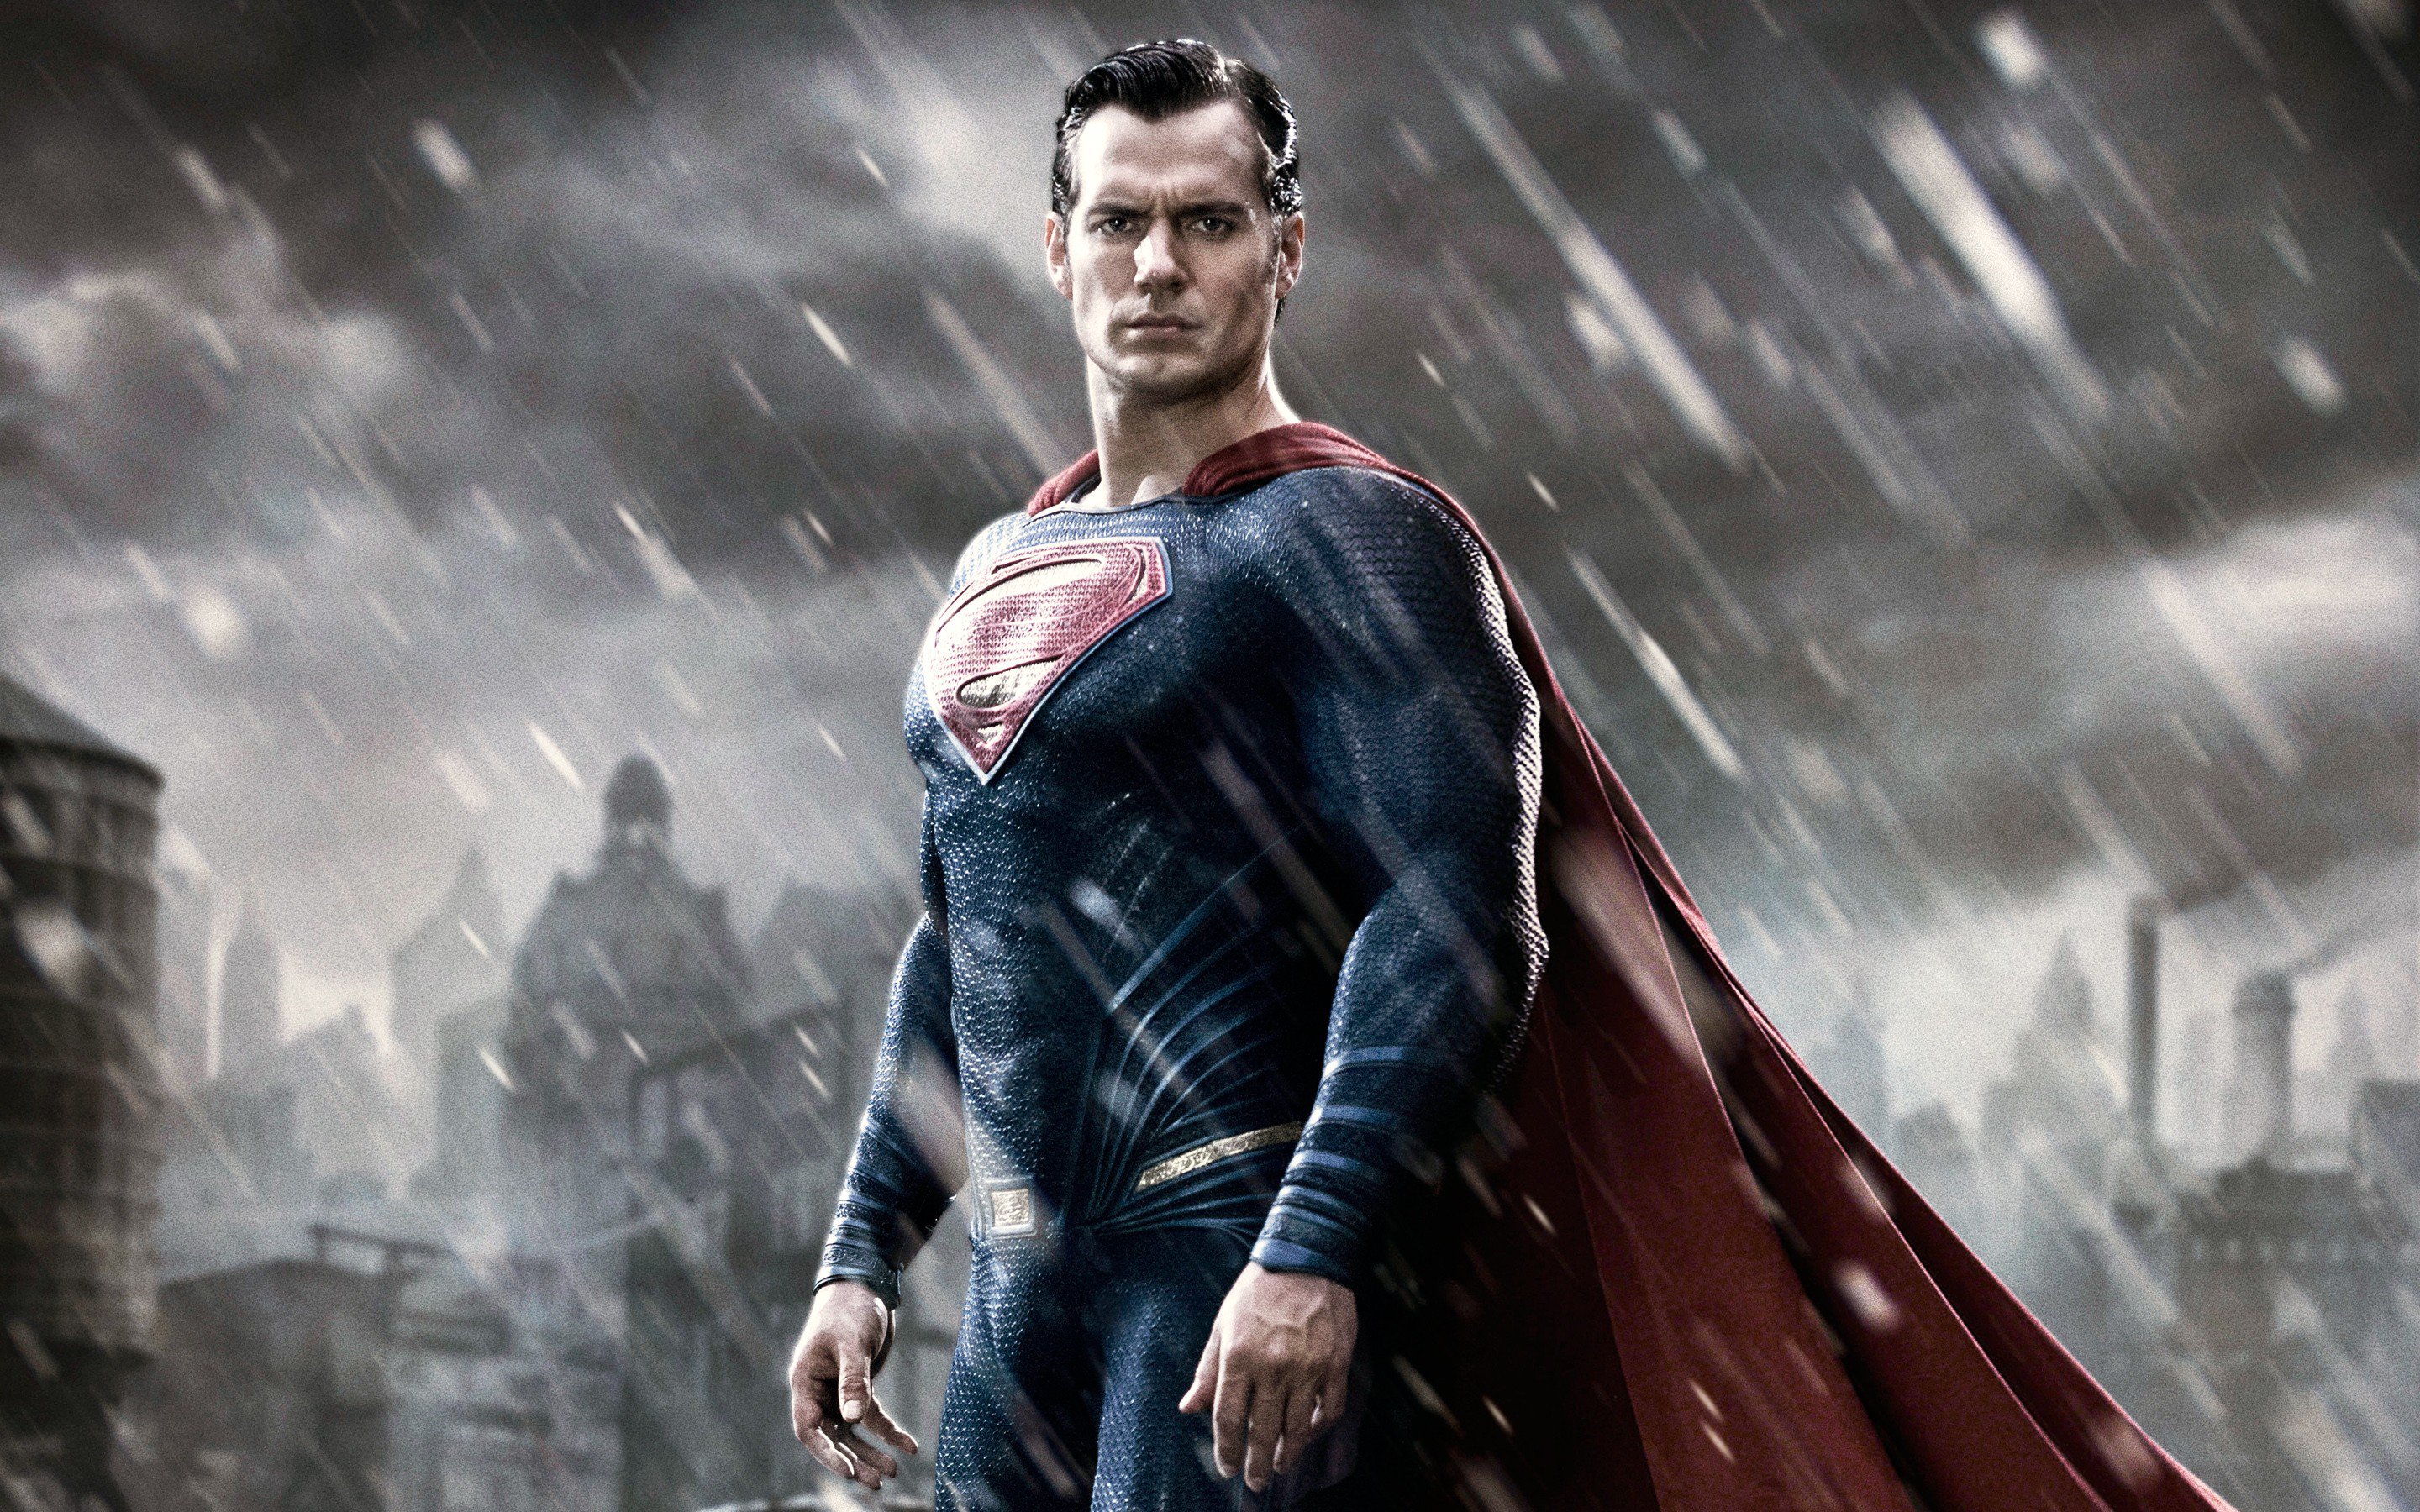  Superman, el héroe más poderoso según científicos